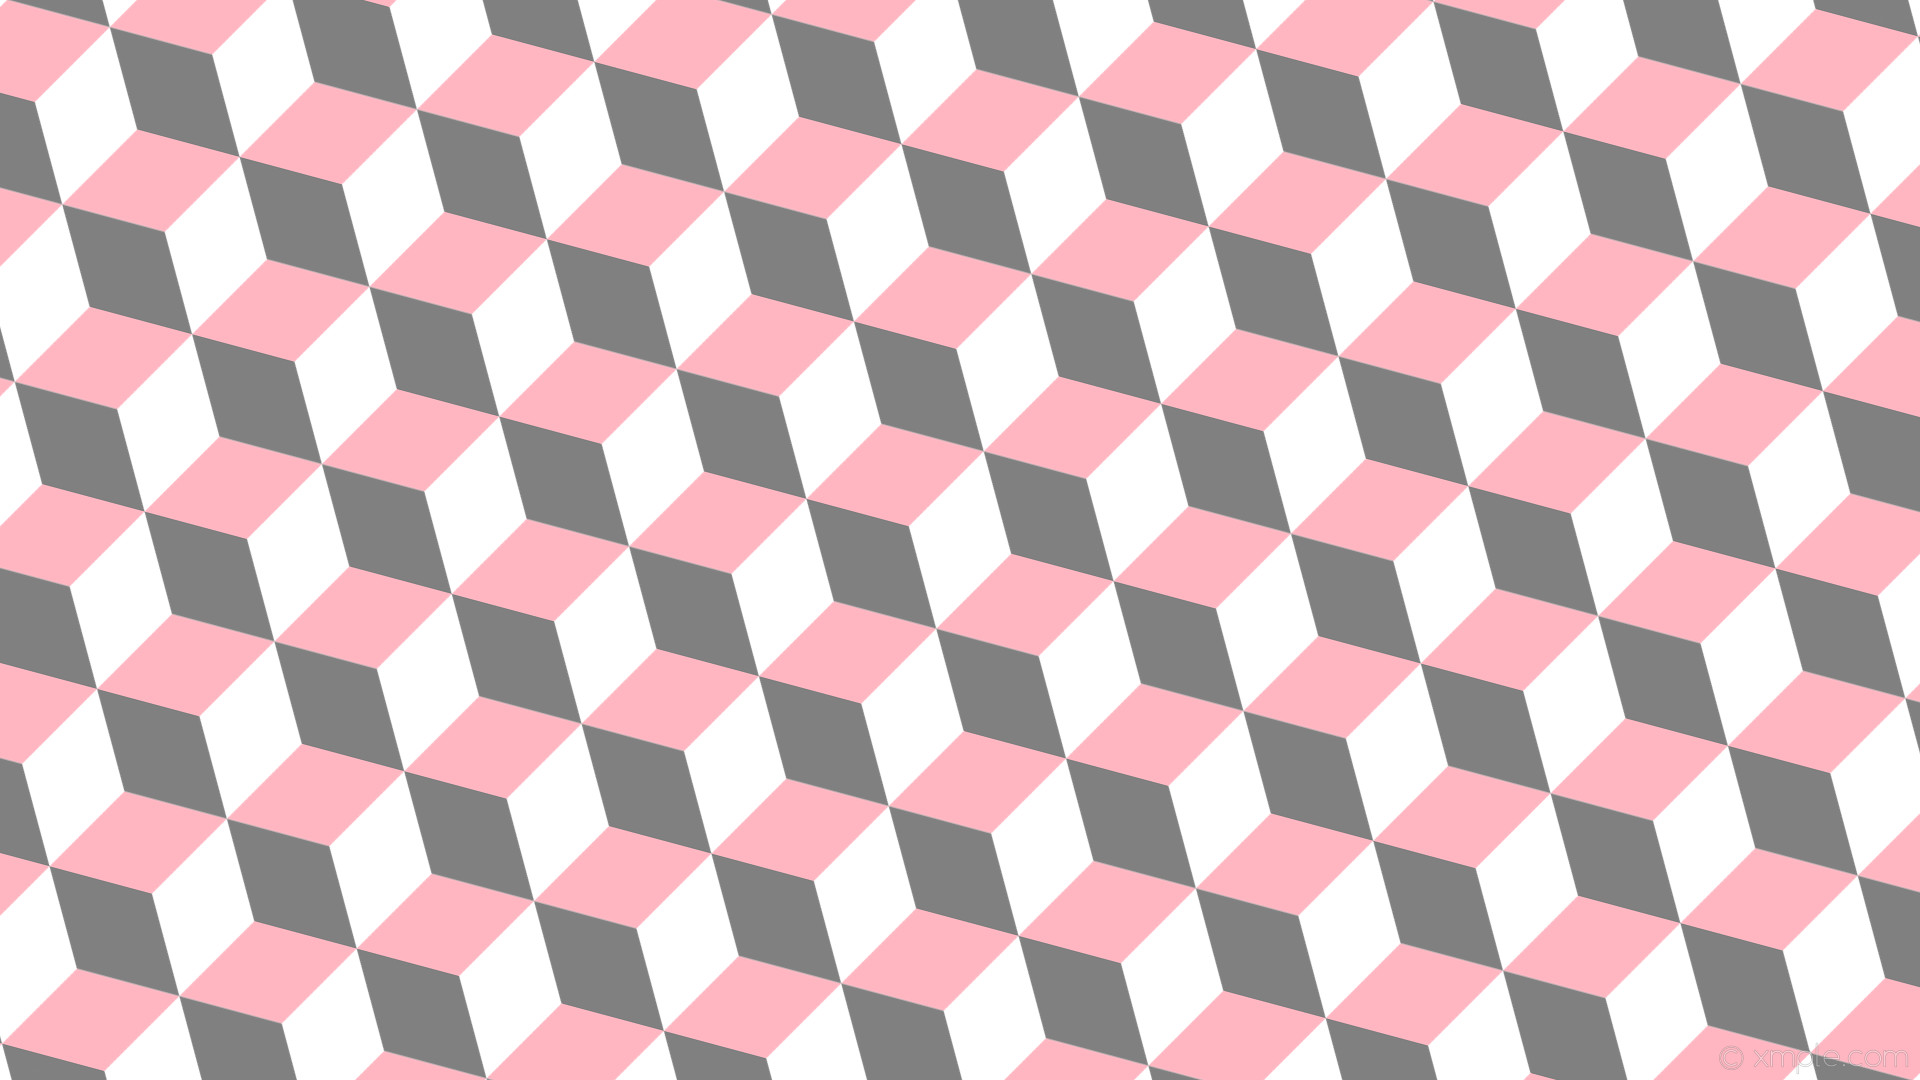 1920x1080 wallpaper pink 3d cubes grey white light pink gray #ffffff #ffb6c1 #808080  255